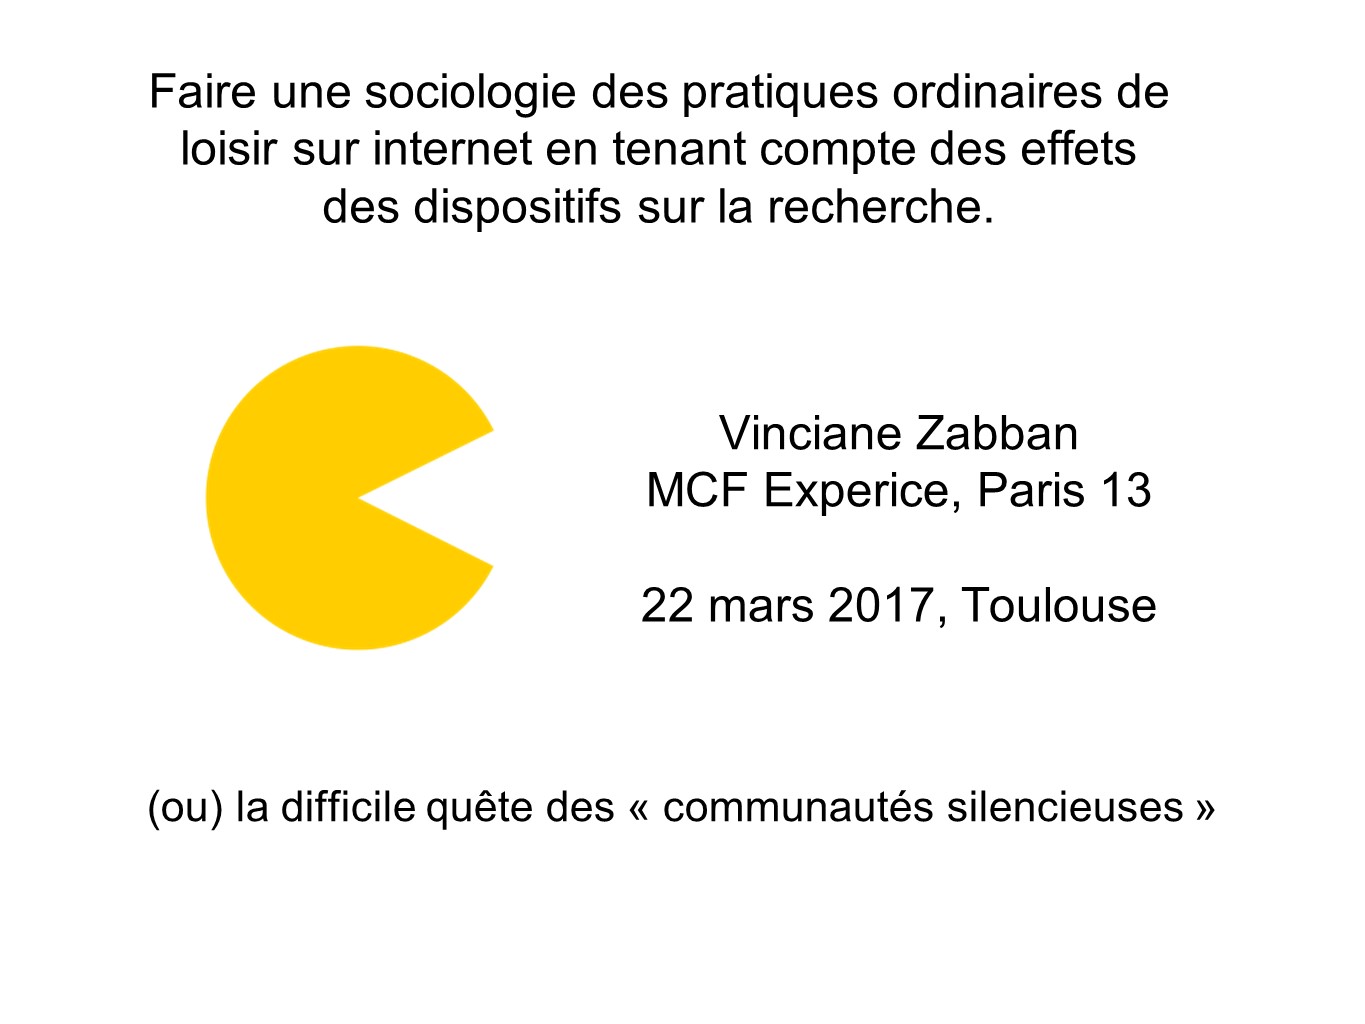 Zabban-parler dans medias sociaux-Toulouse 2017-01.JPG